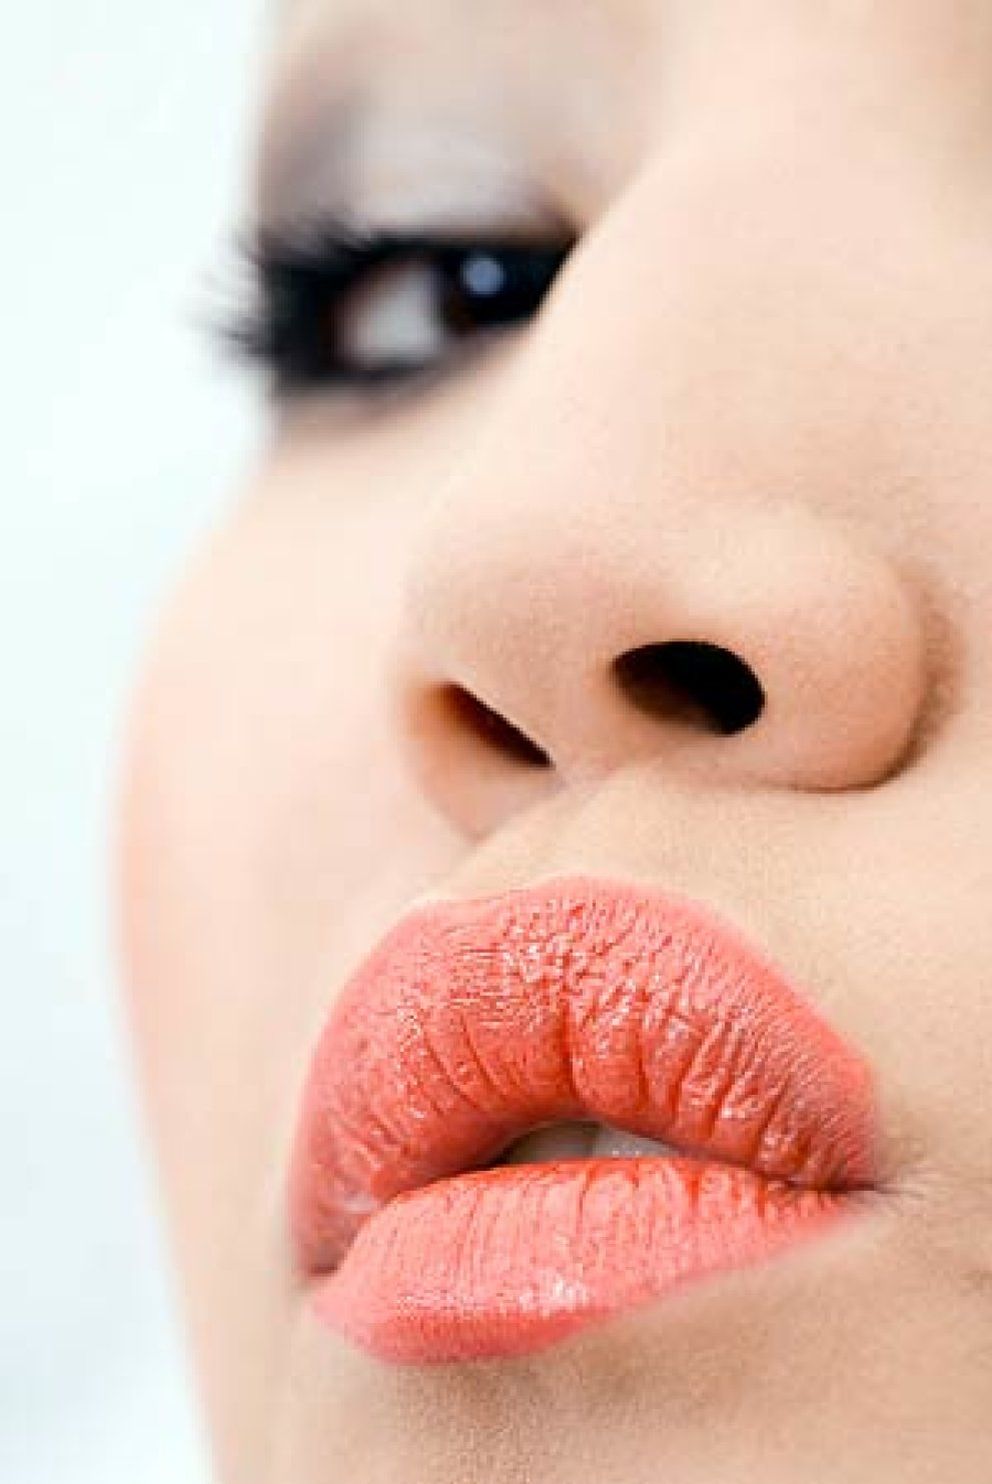 Foto: Al fin, unos labios naturales desbordando NSD: naturalidad, sensualidad y discreción